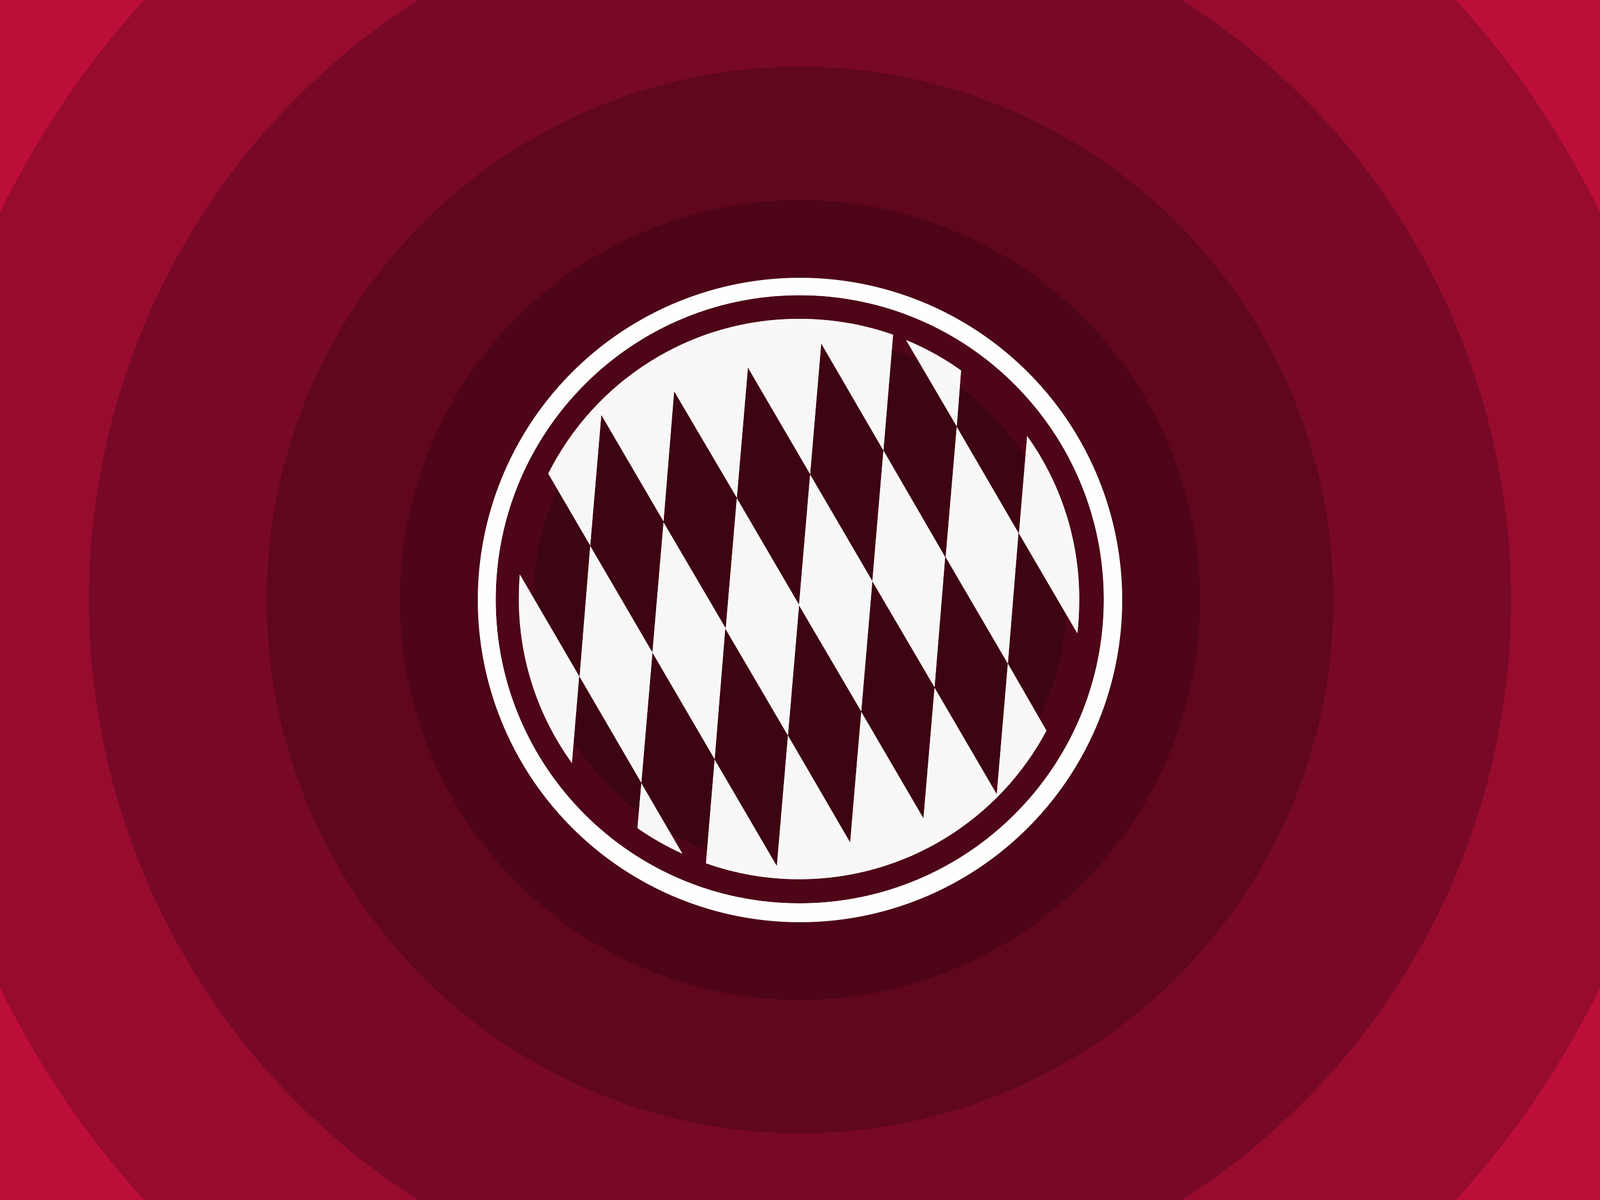 FC Bayern Munich Minimal Logo for 1600 x 1200 resolution